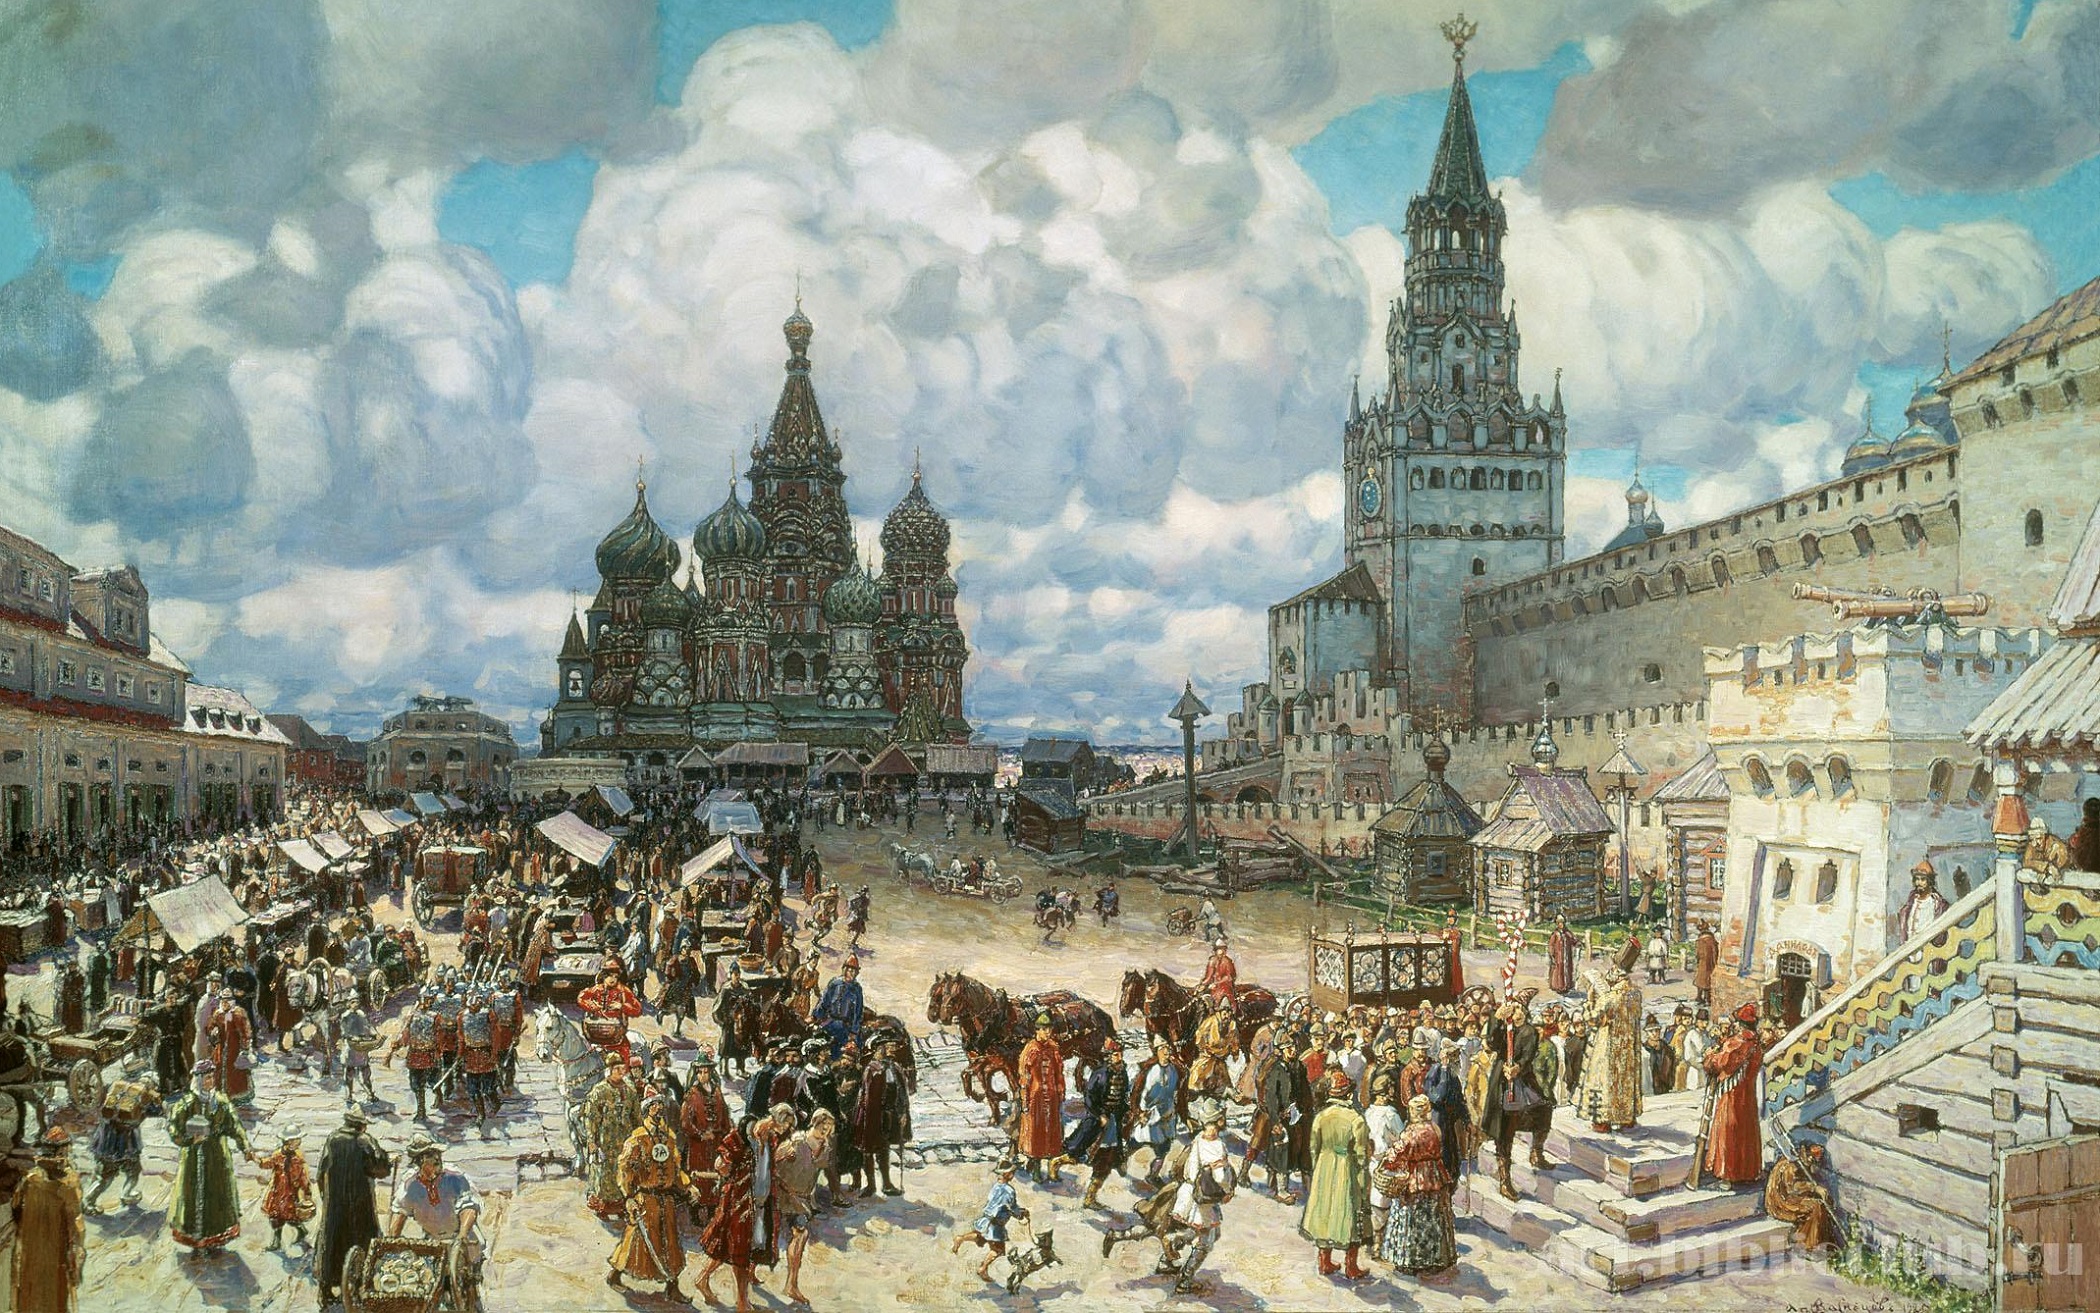 Долгие проводы: Позднее Средневековье после Ренессанса как своеобразие архитектурной хронологии России